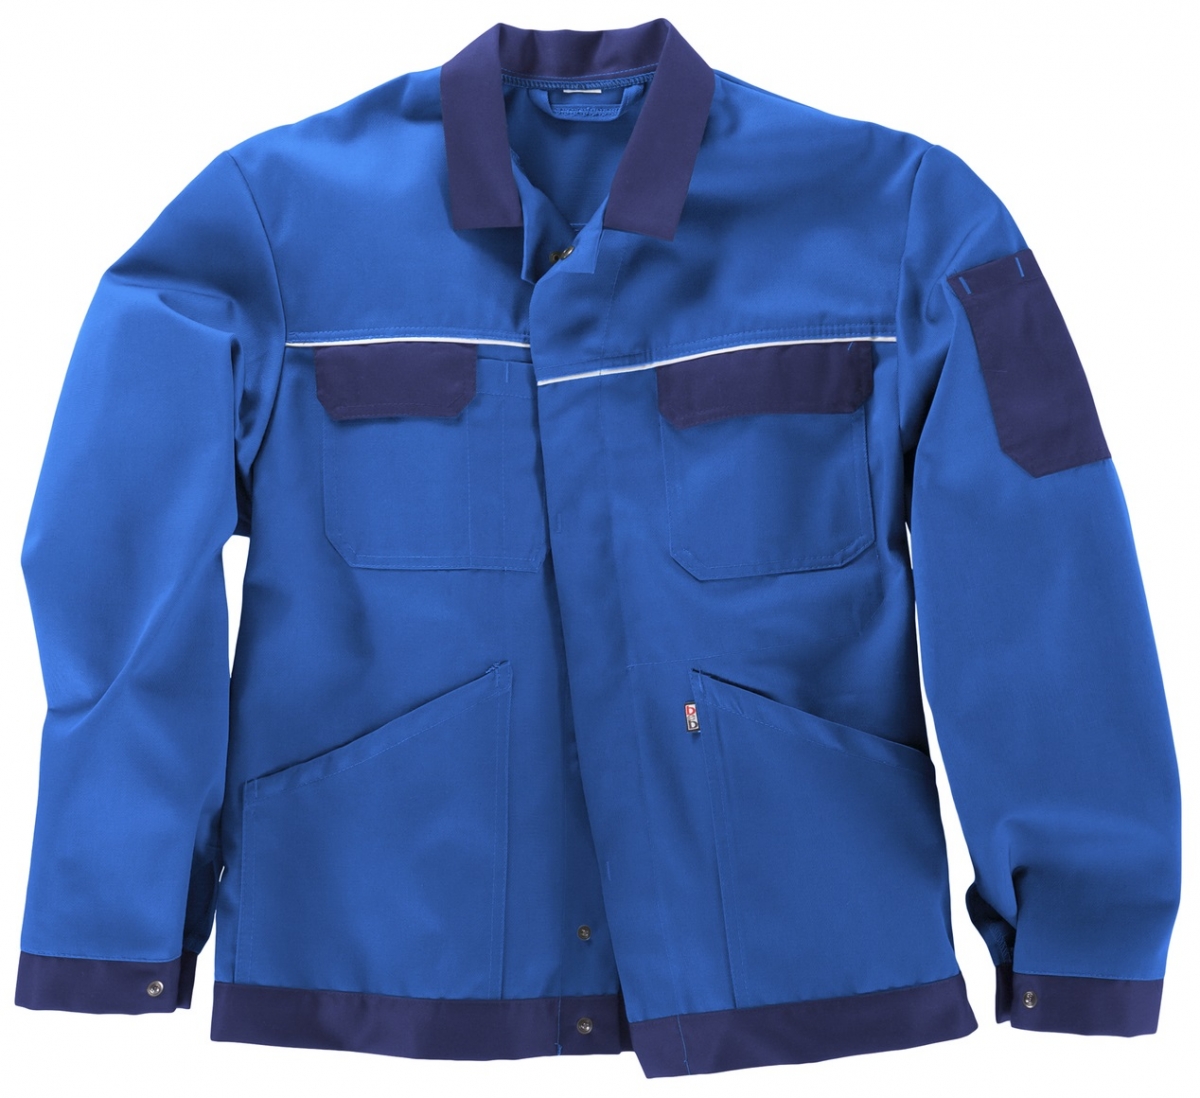 BEB-Workwear, Arbeitsjacke, Herren-Arbeits-Berufs-Bund-Jacke, Classic, kornblau/schwarz